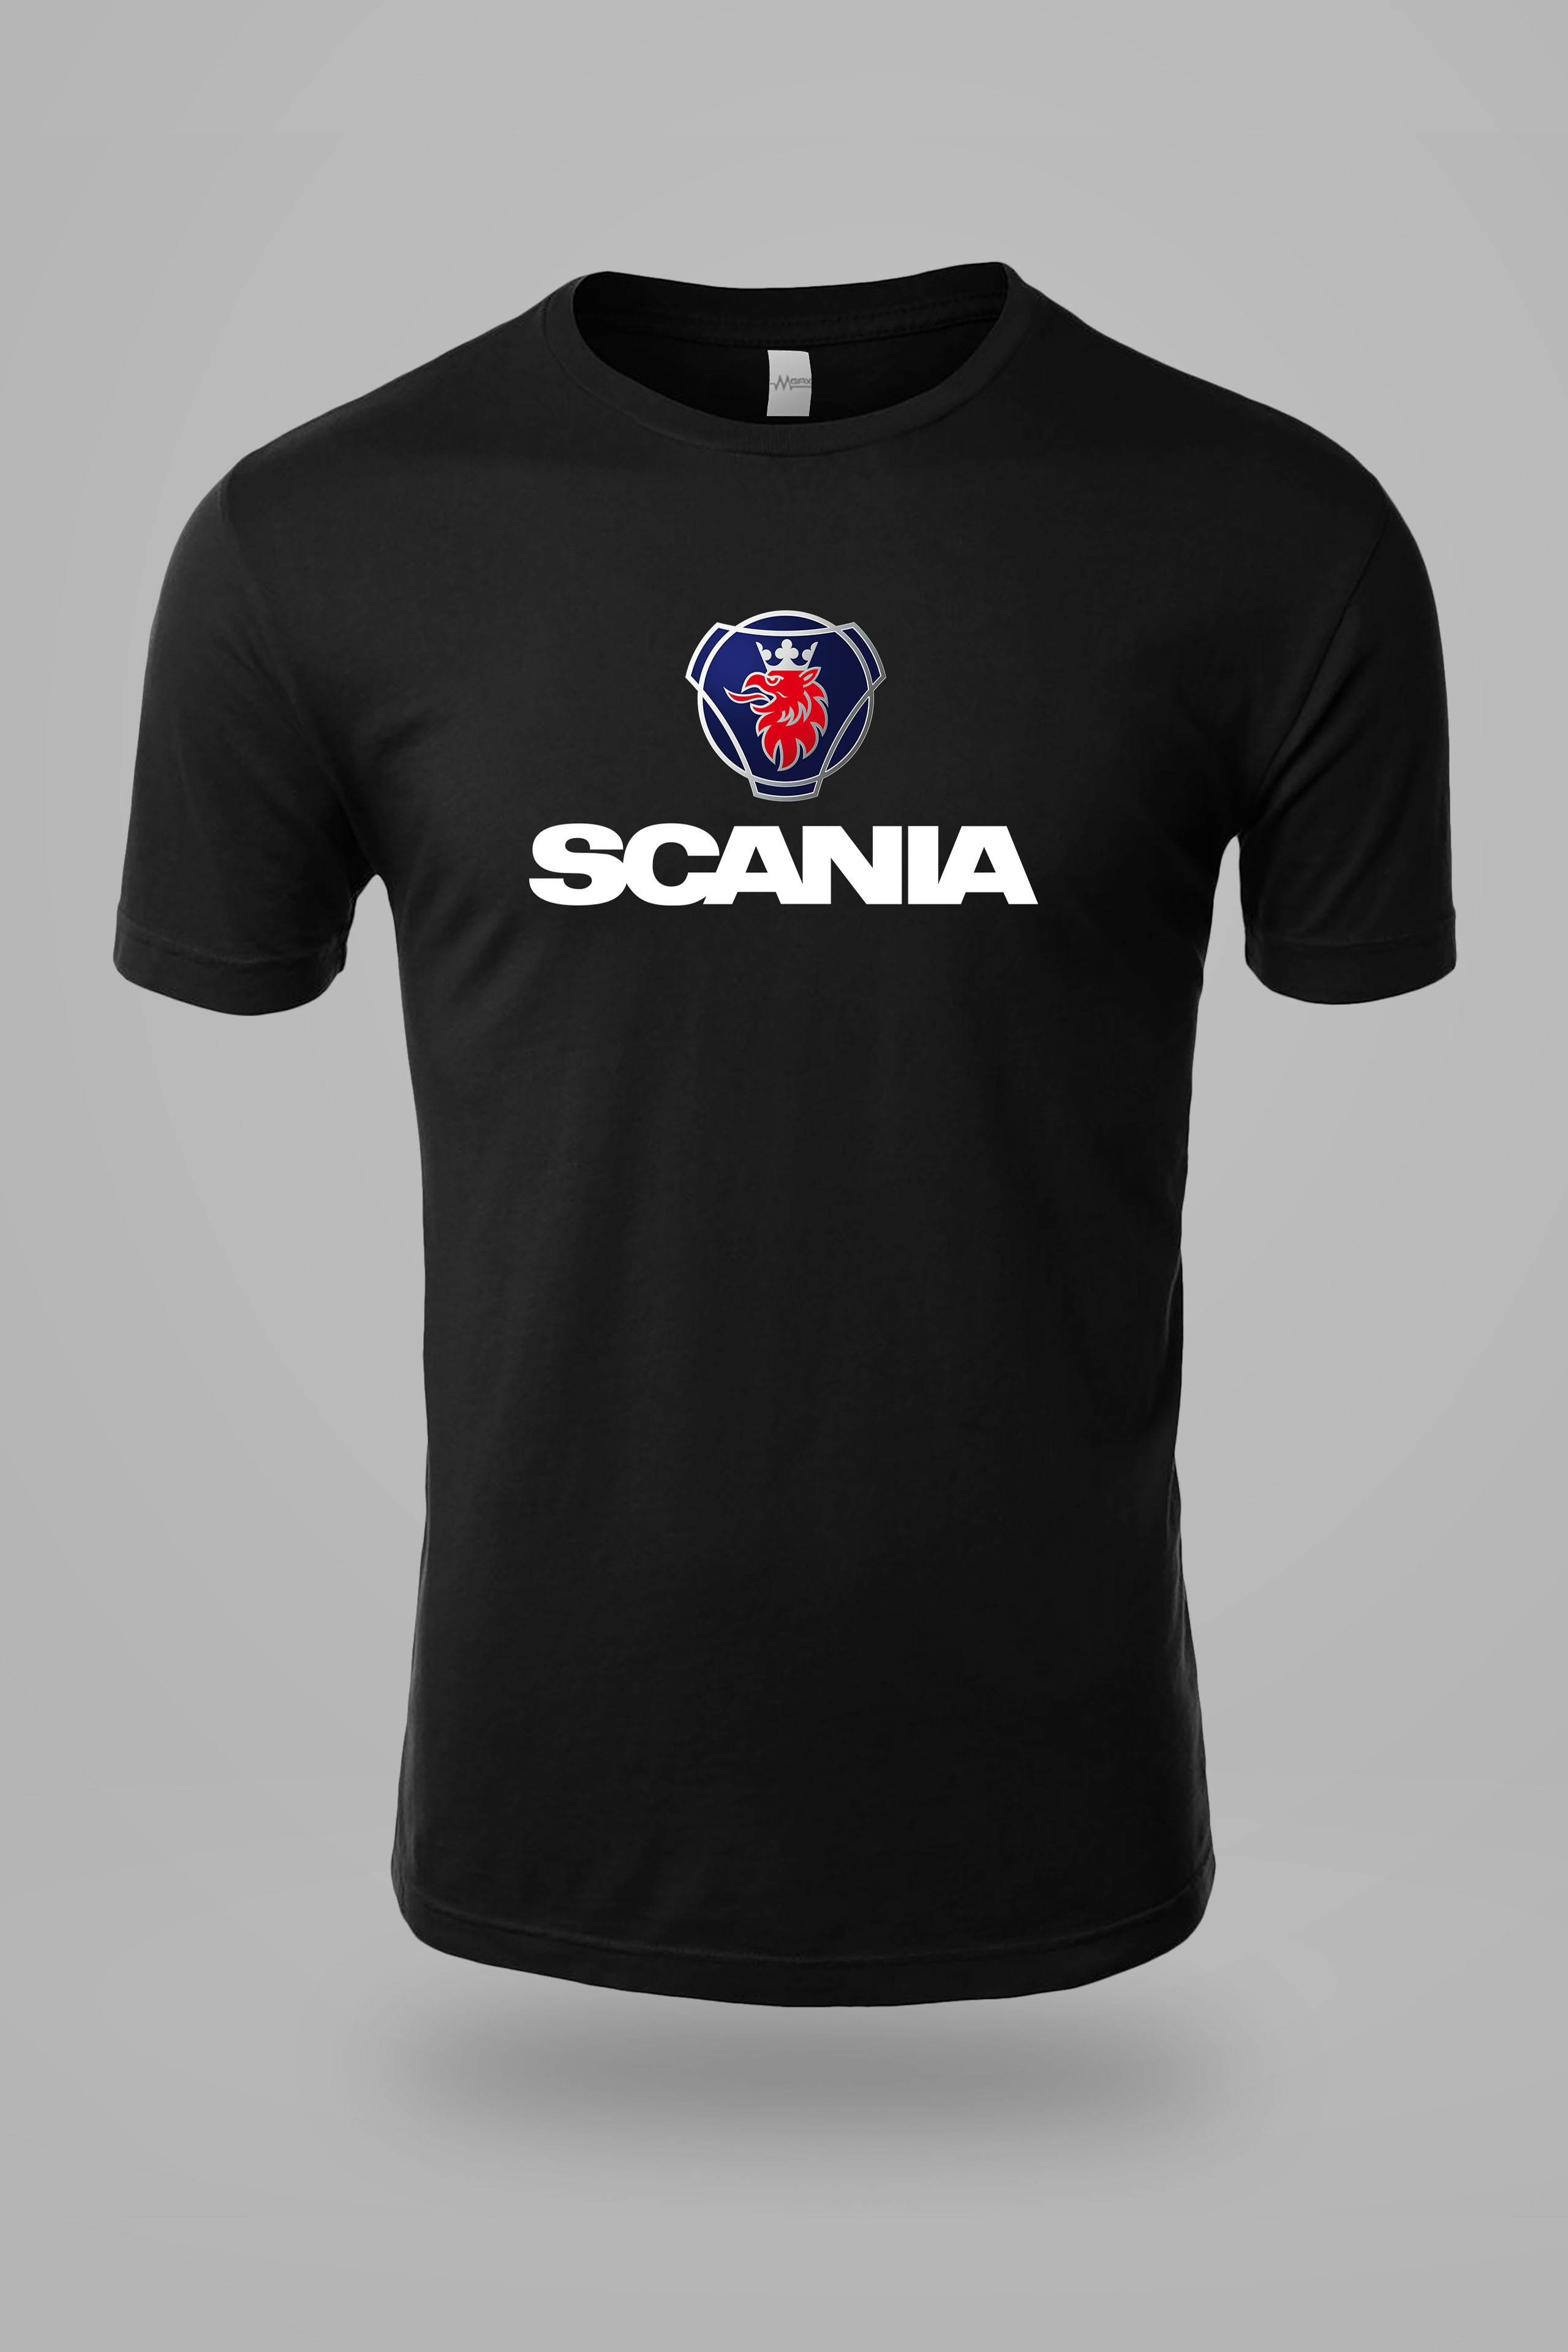 Scania Logo ve Yazı Göğüs Baskılı Tişört